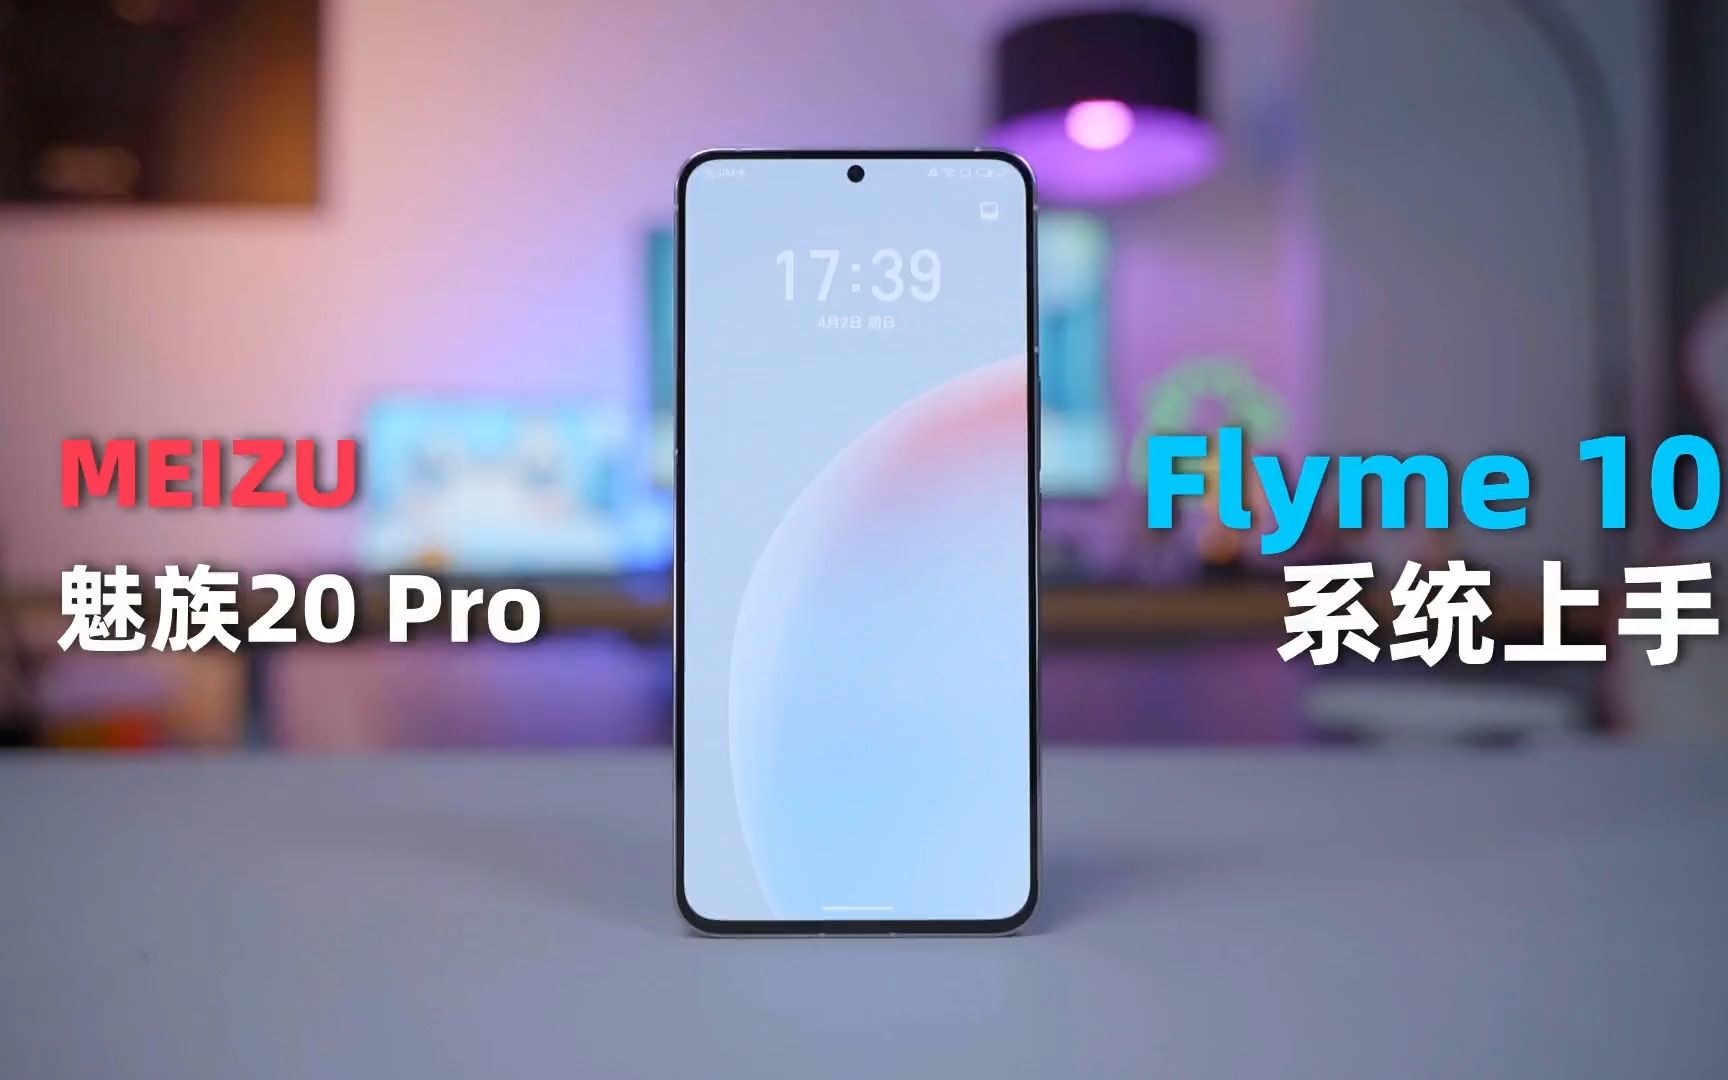 魅族20 Pro，Flyme 10快速上手#魅族20pro ！